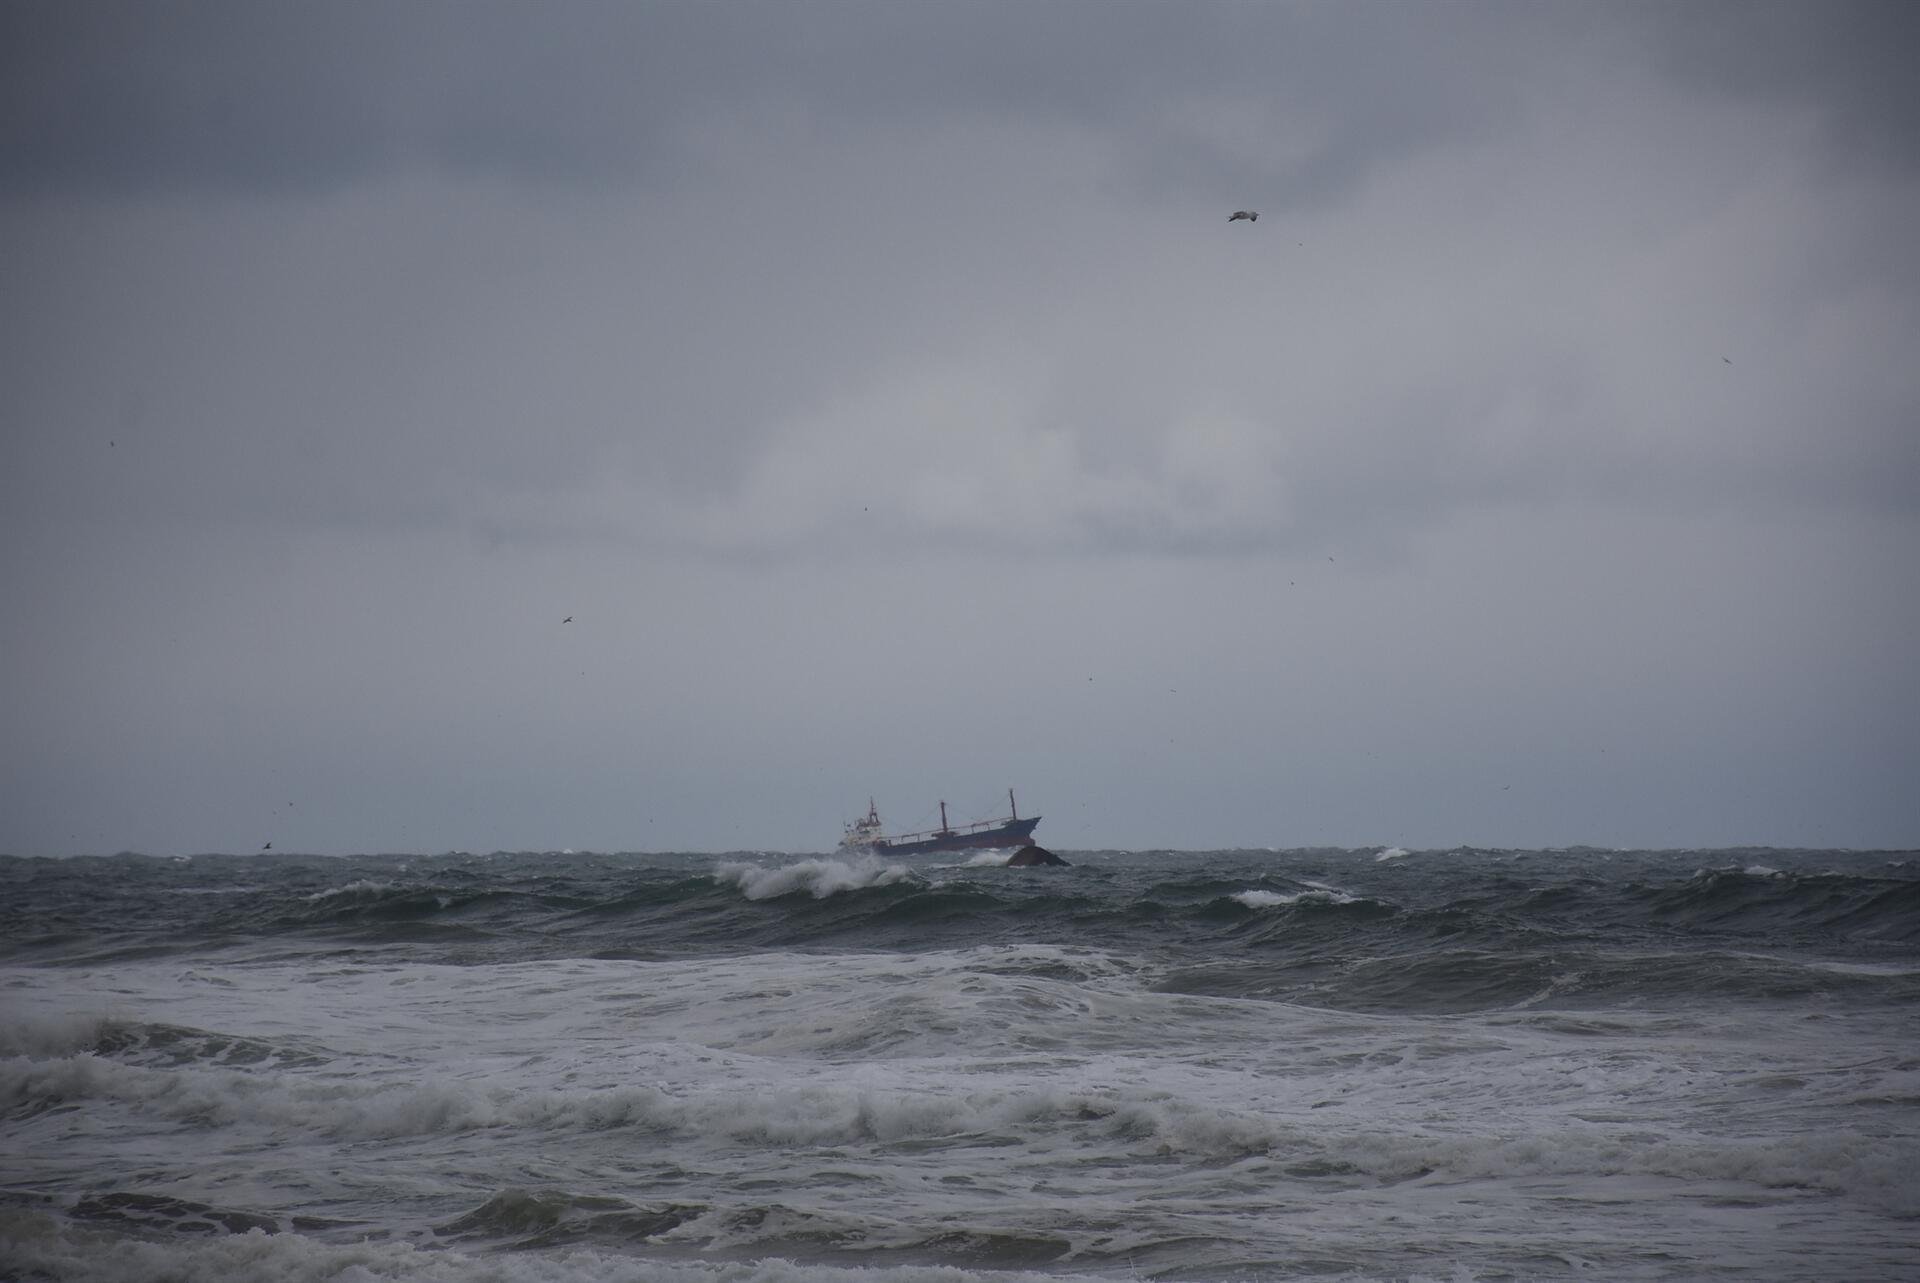  VIDEO O navă de marfă s-a scufundat în Marea Neagră: Cel puțin doi morți